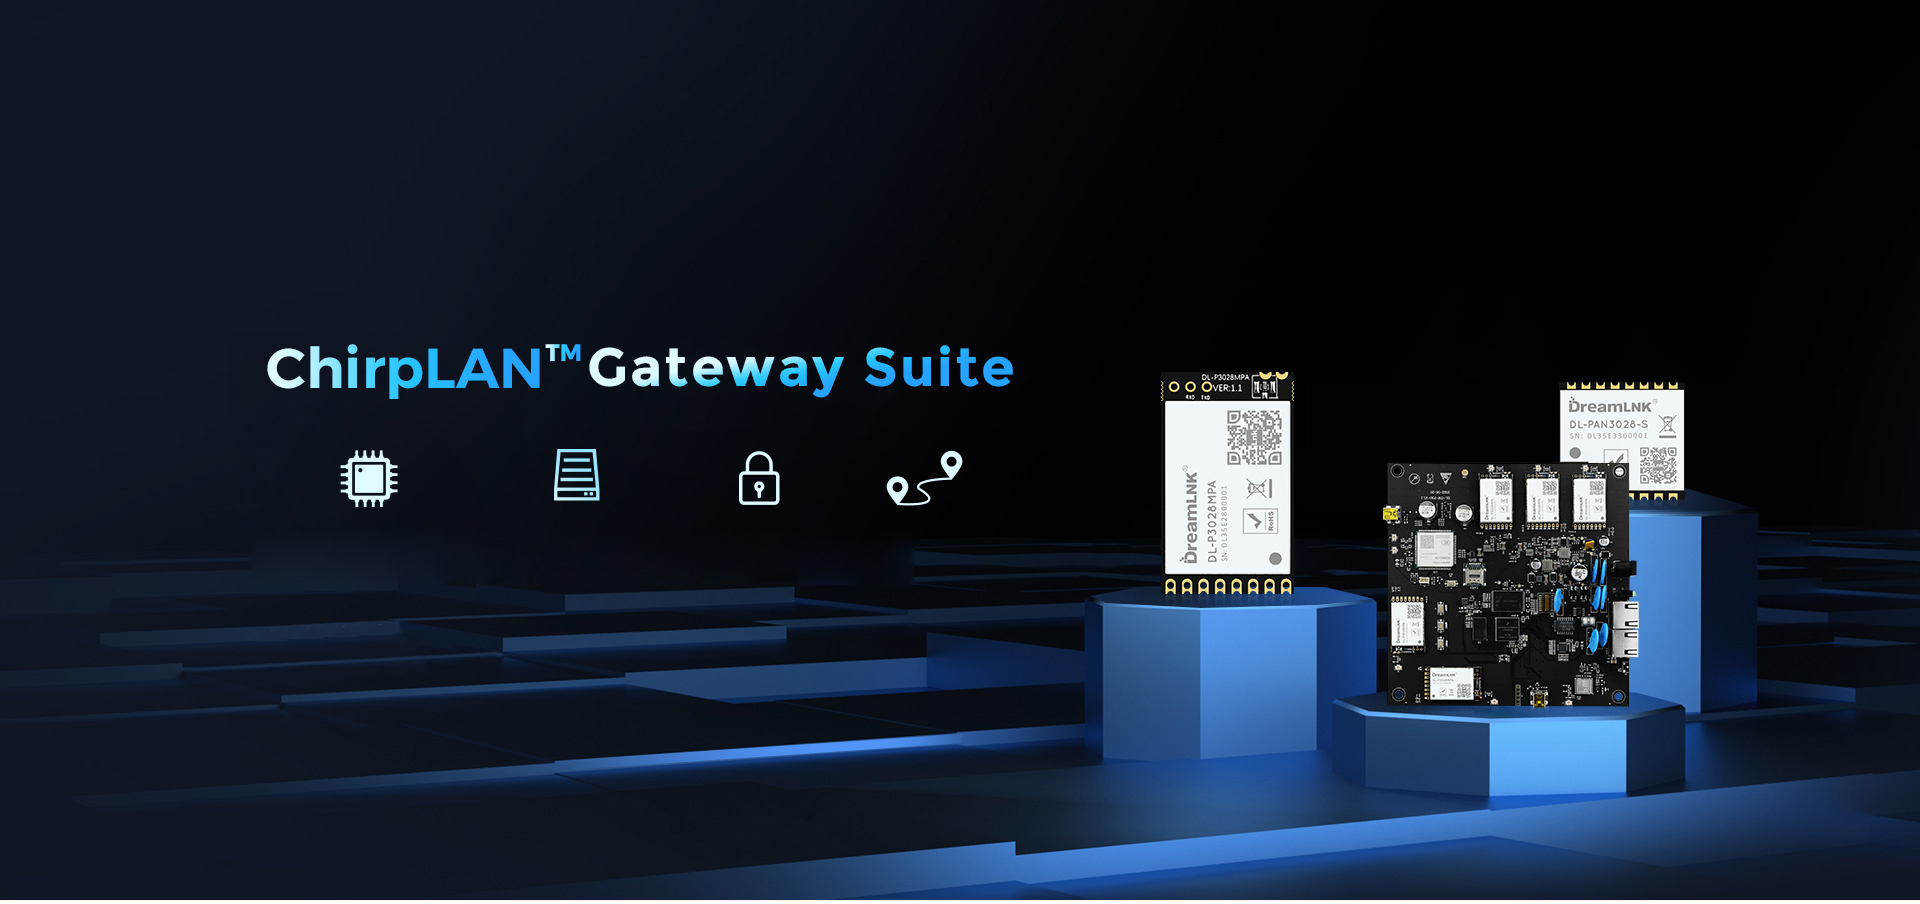 ChirpLAN-Wireless-Gateway-Suite-无文字版_01